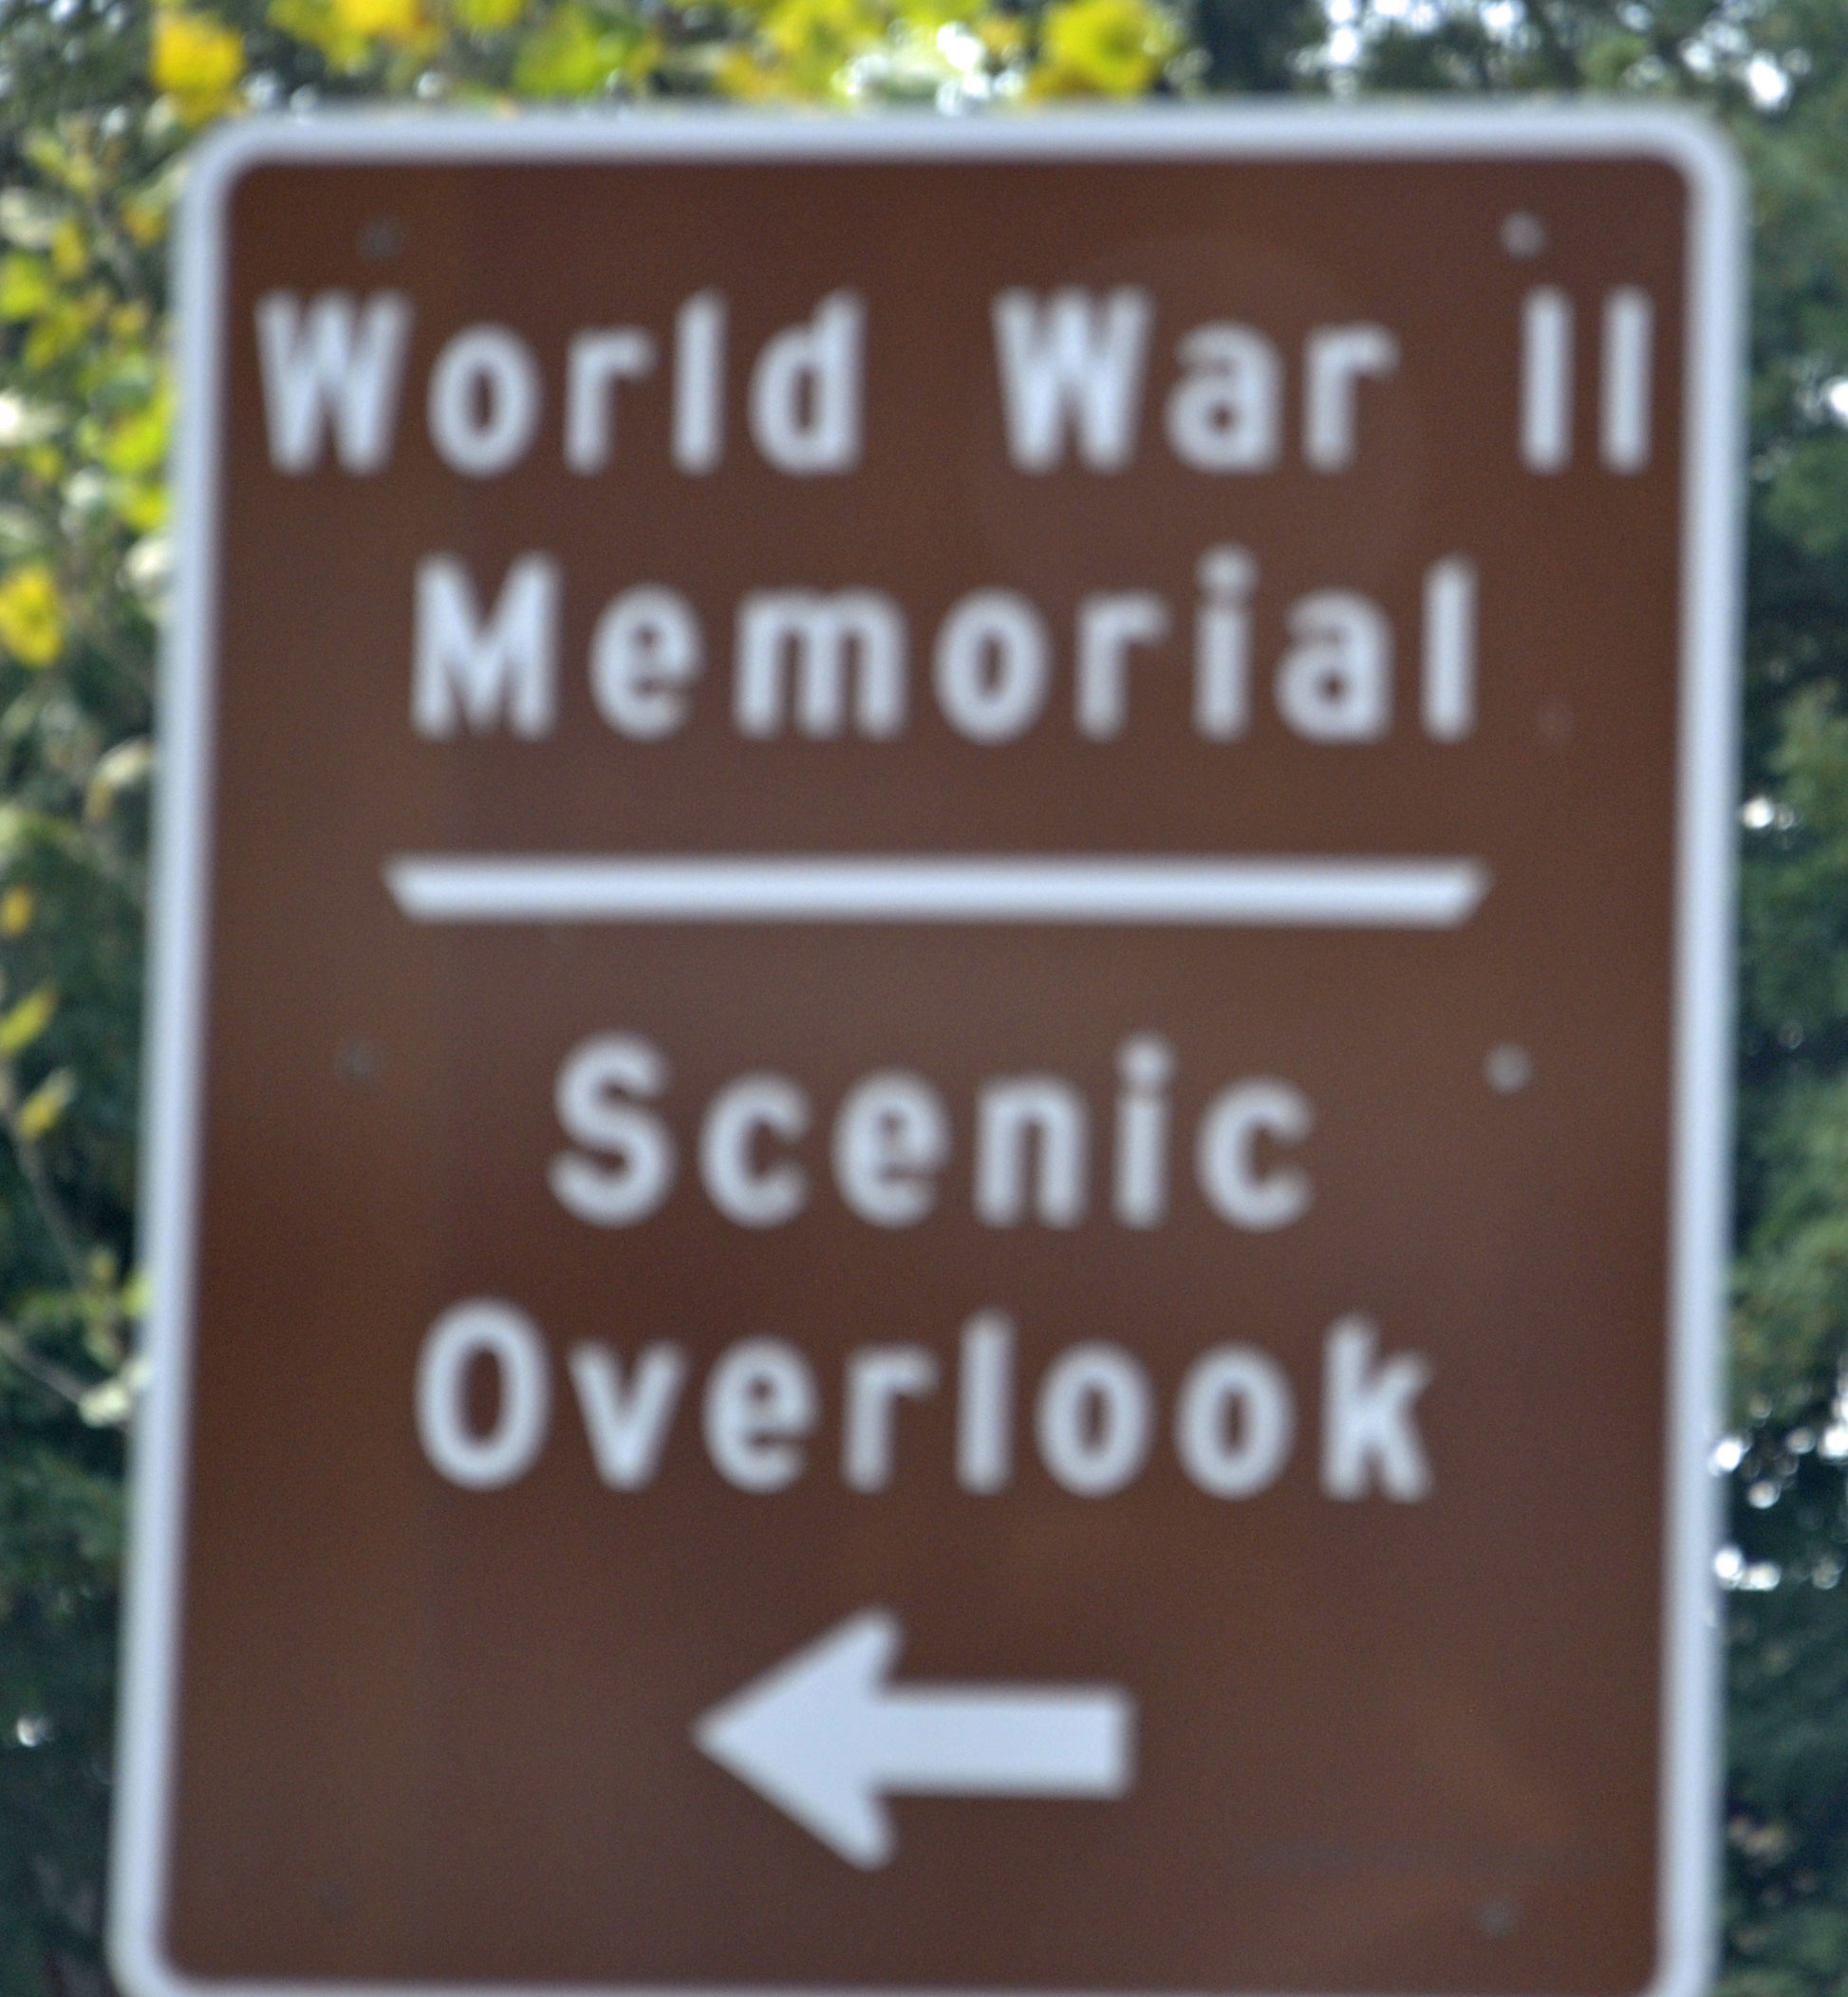 World War II Memorial sign